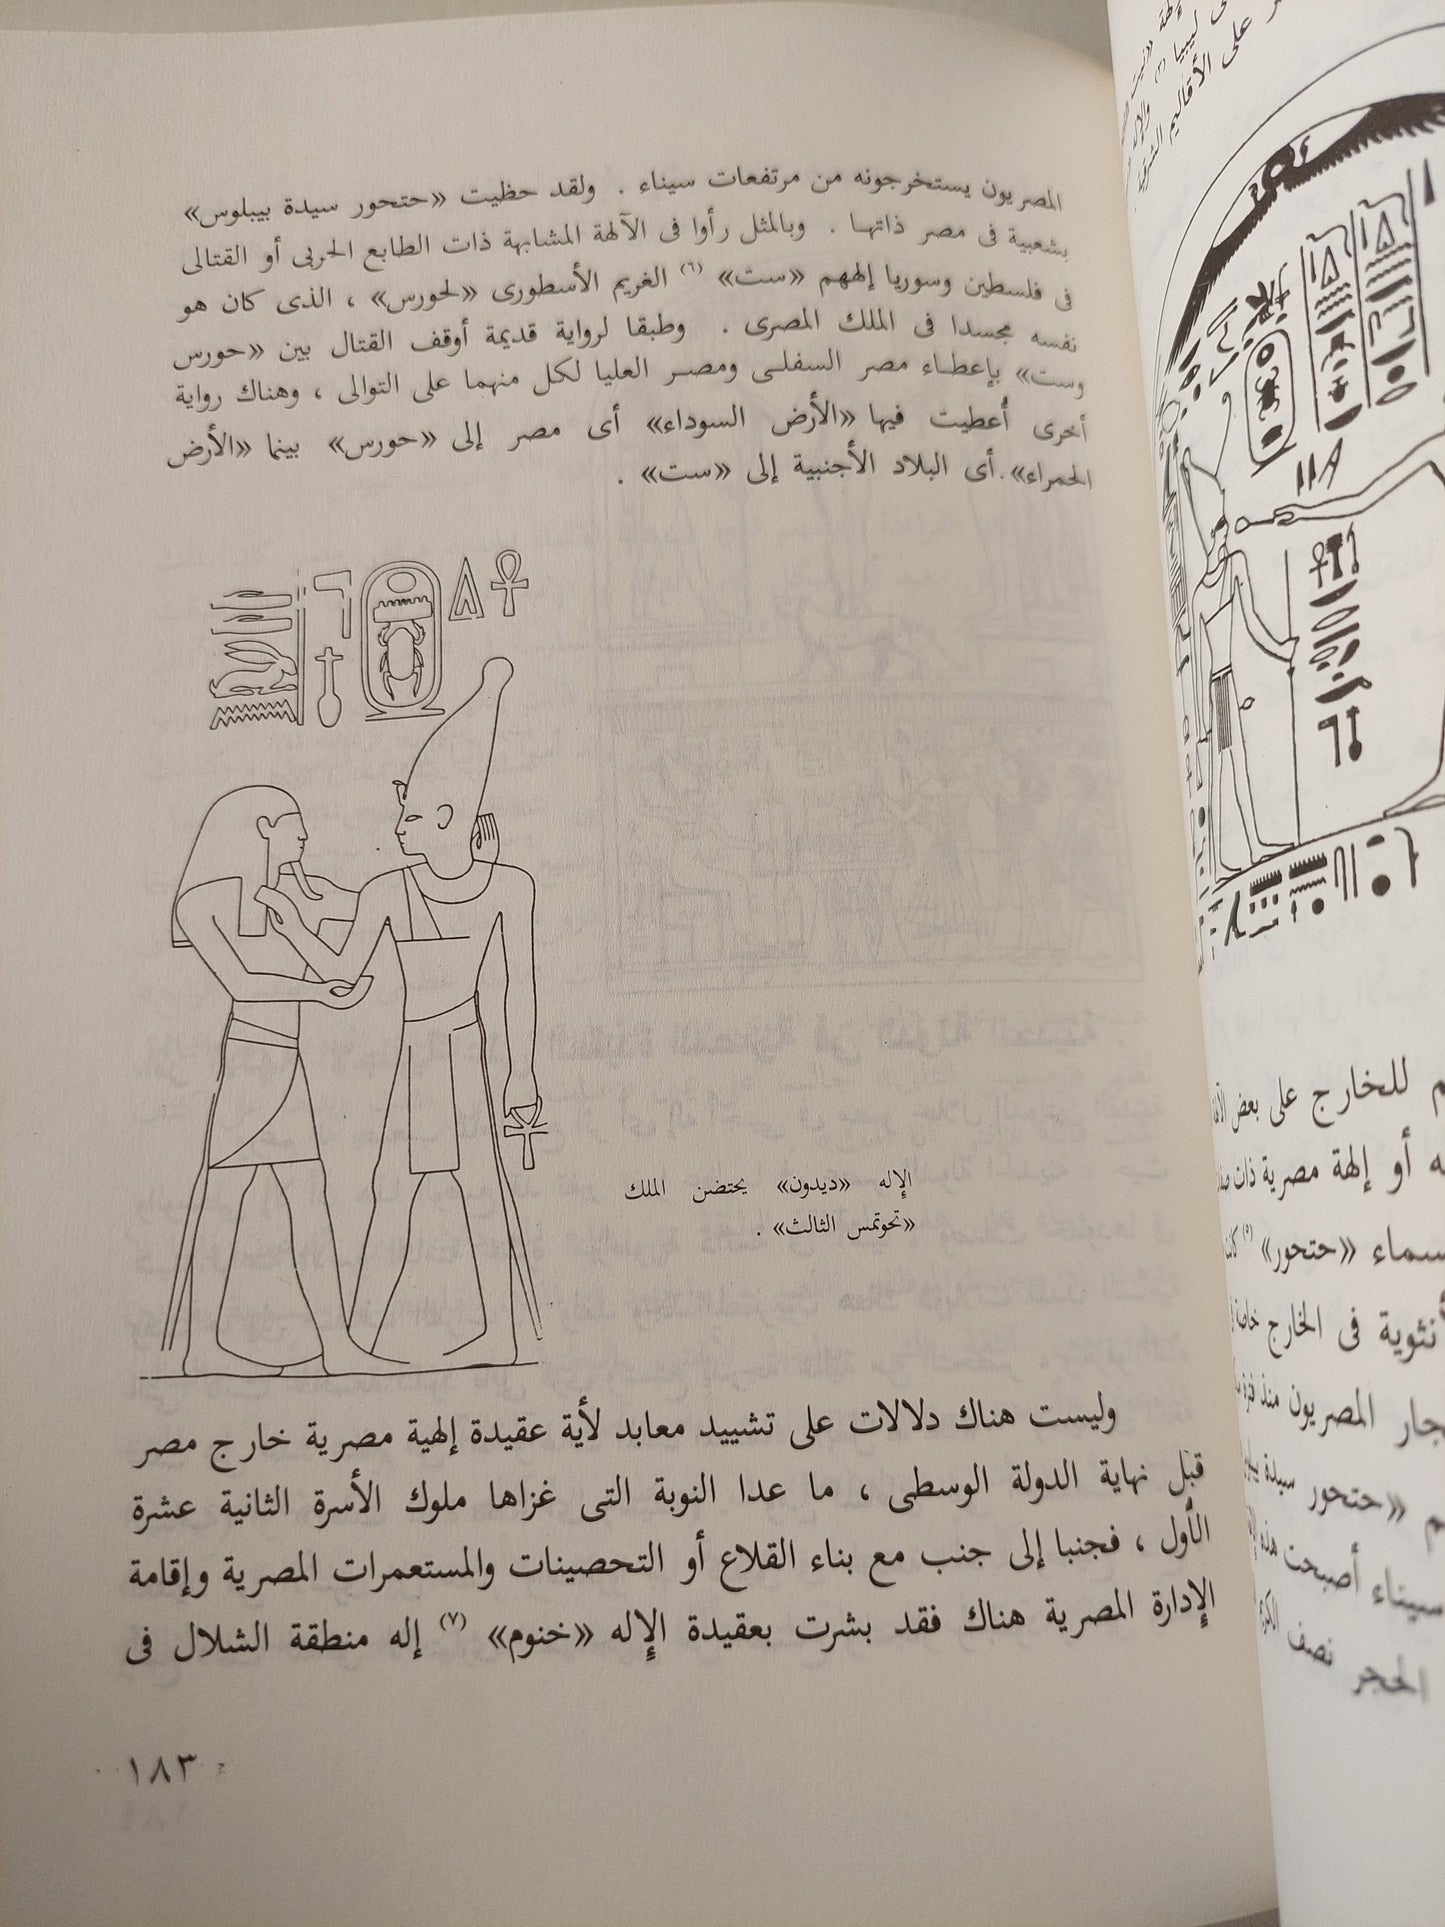 الديانة المصرية القديمة (6) - ملحق بالكتاب جزء خاص بالصور واللوحات كتاب المكتبة الفلسفية 